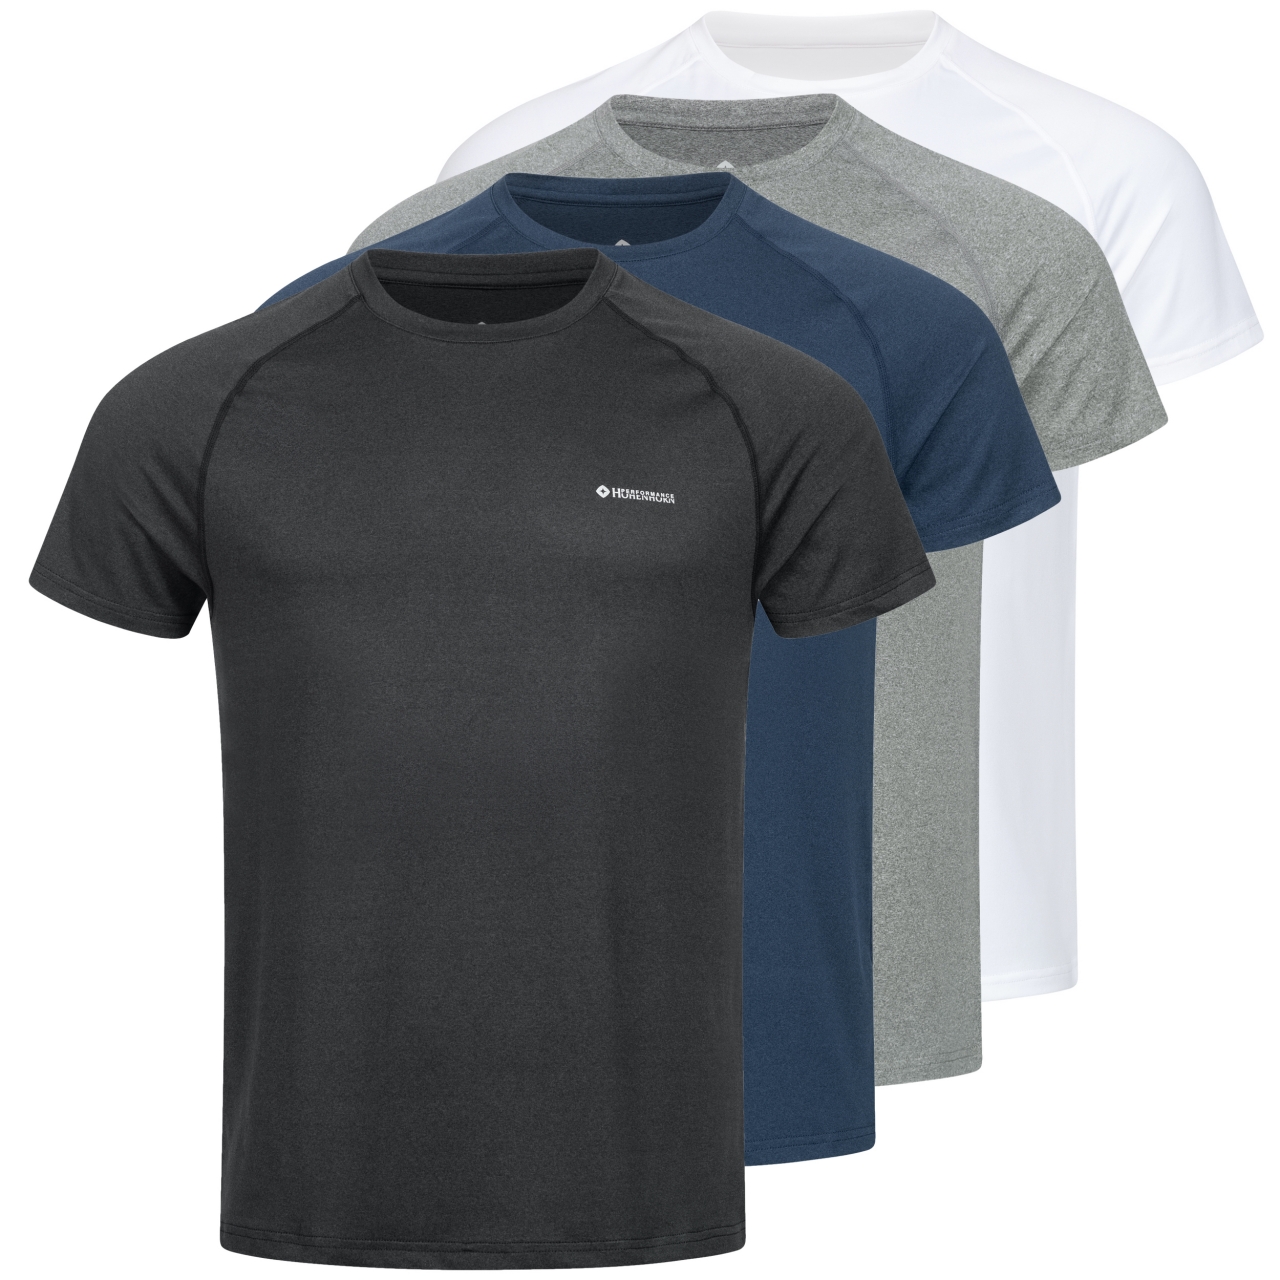 Höhenhorn Kannin Herren T-Shirt Laufshirt Fitness aus Recyceltem Material XXL Dunkelgrau von Höhenhorn